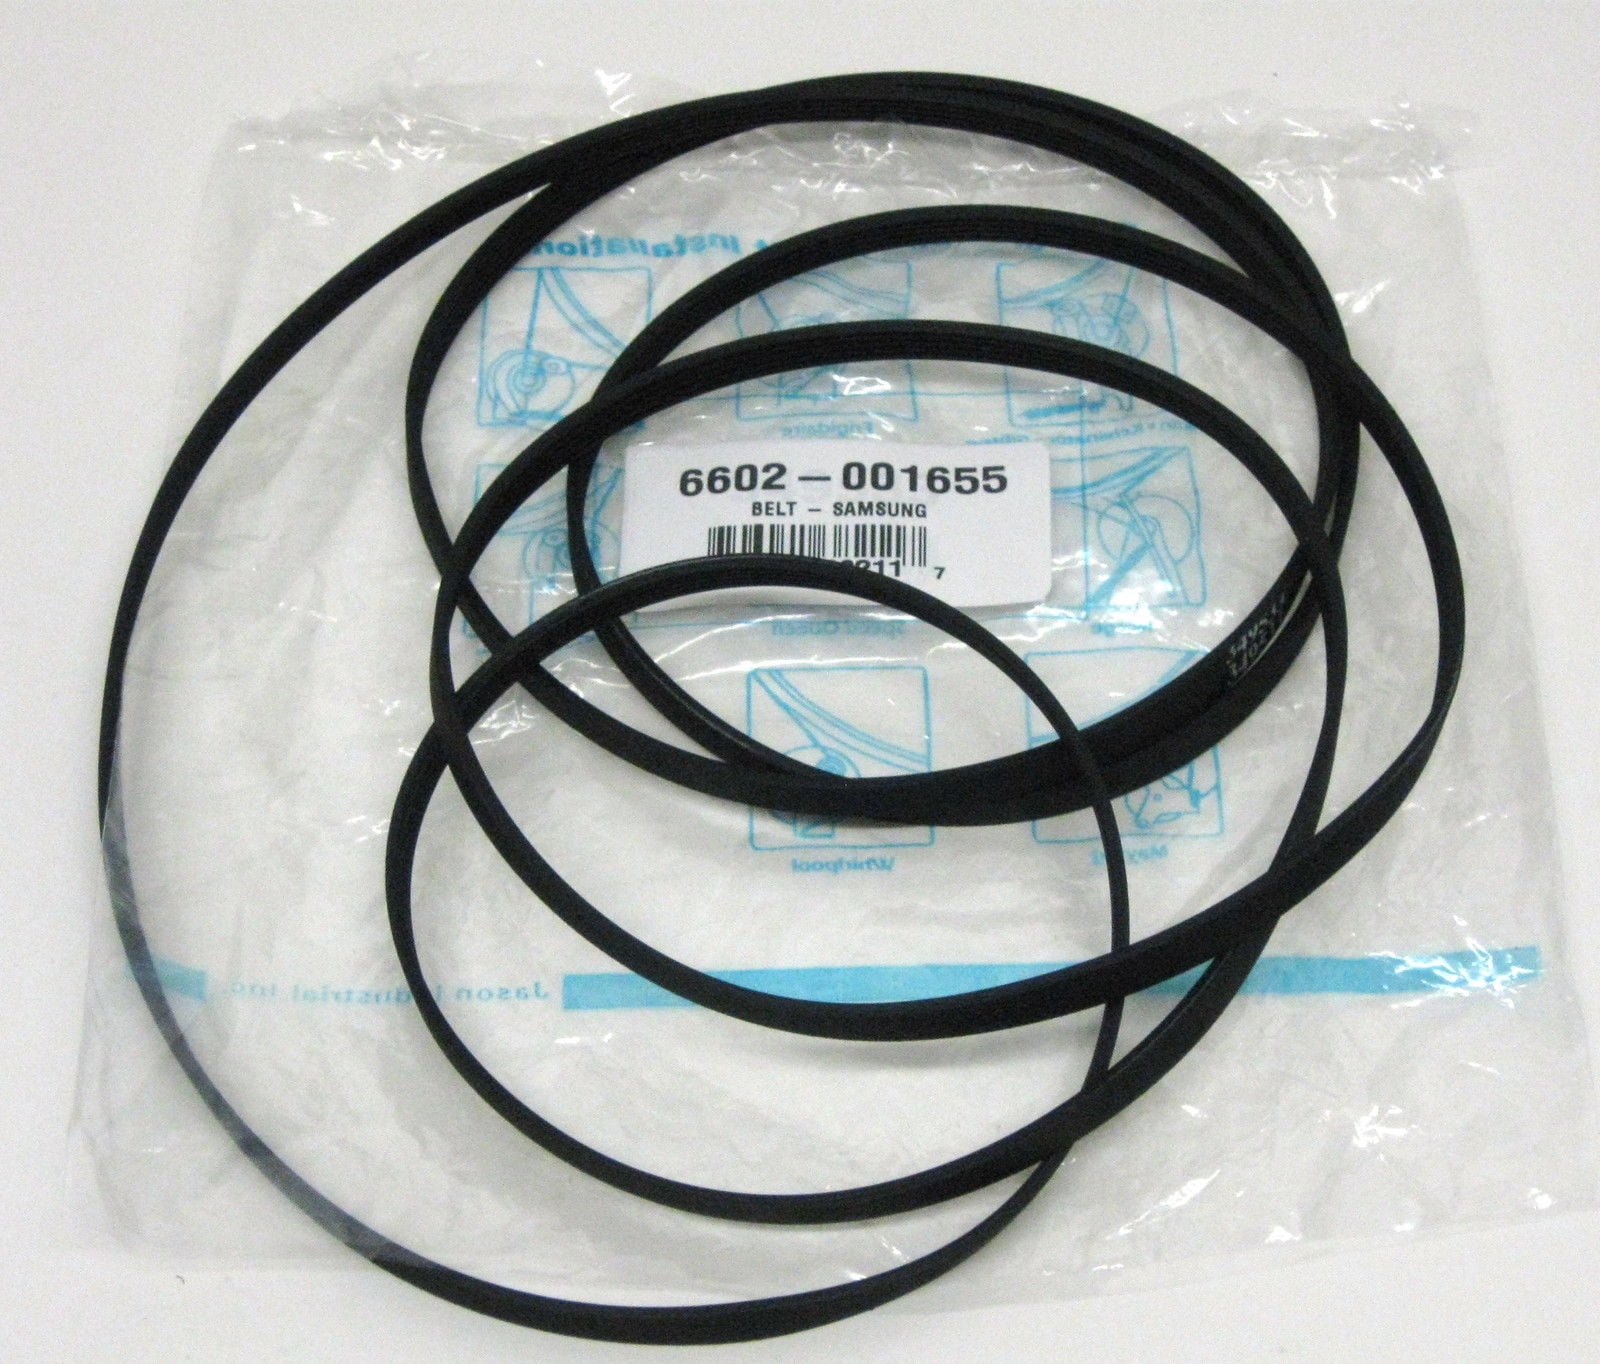 3 Dryer Drum Belt for Samsung 6602-001655 6602-001314 